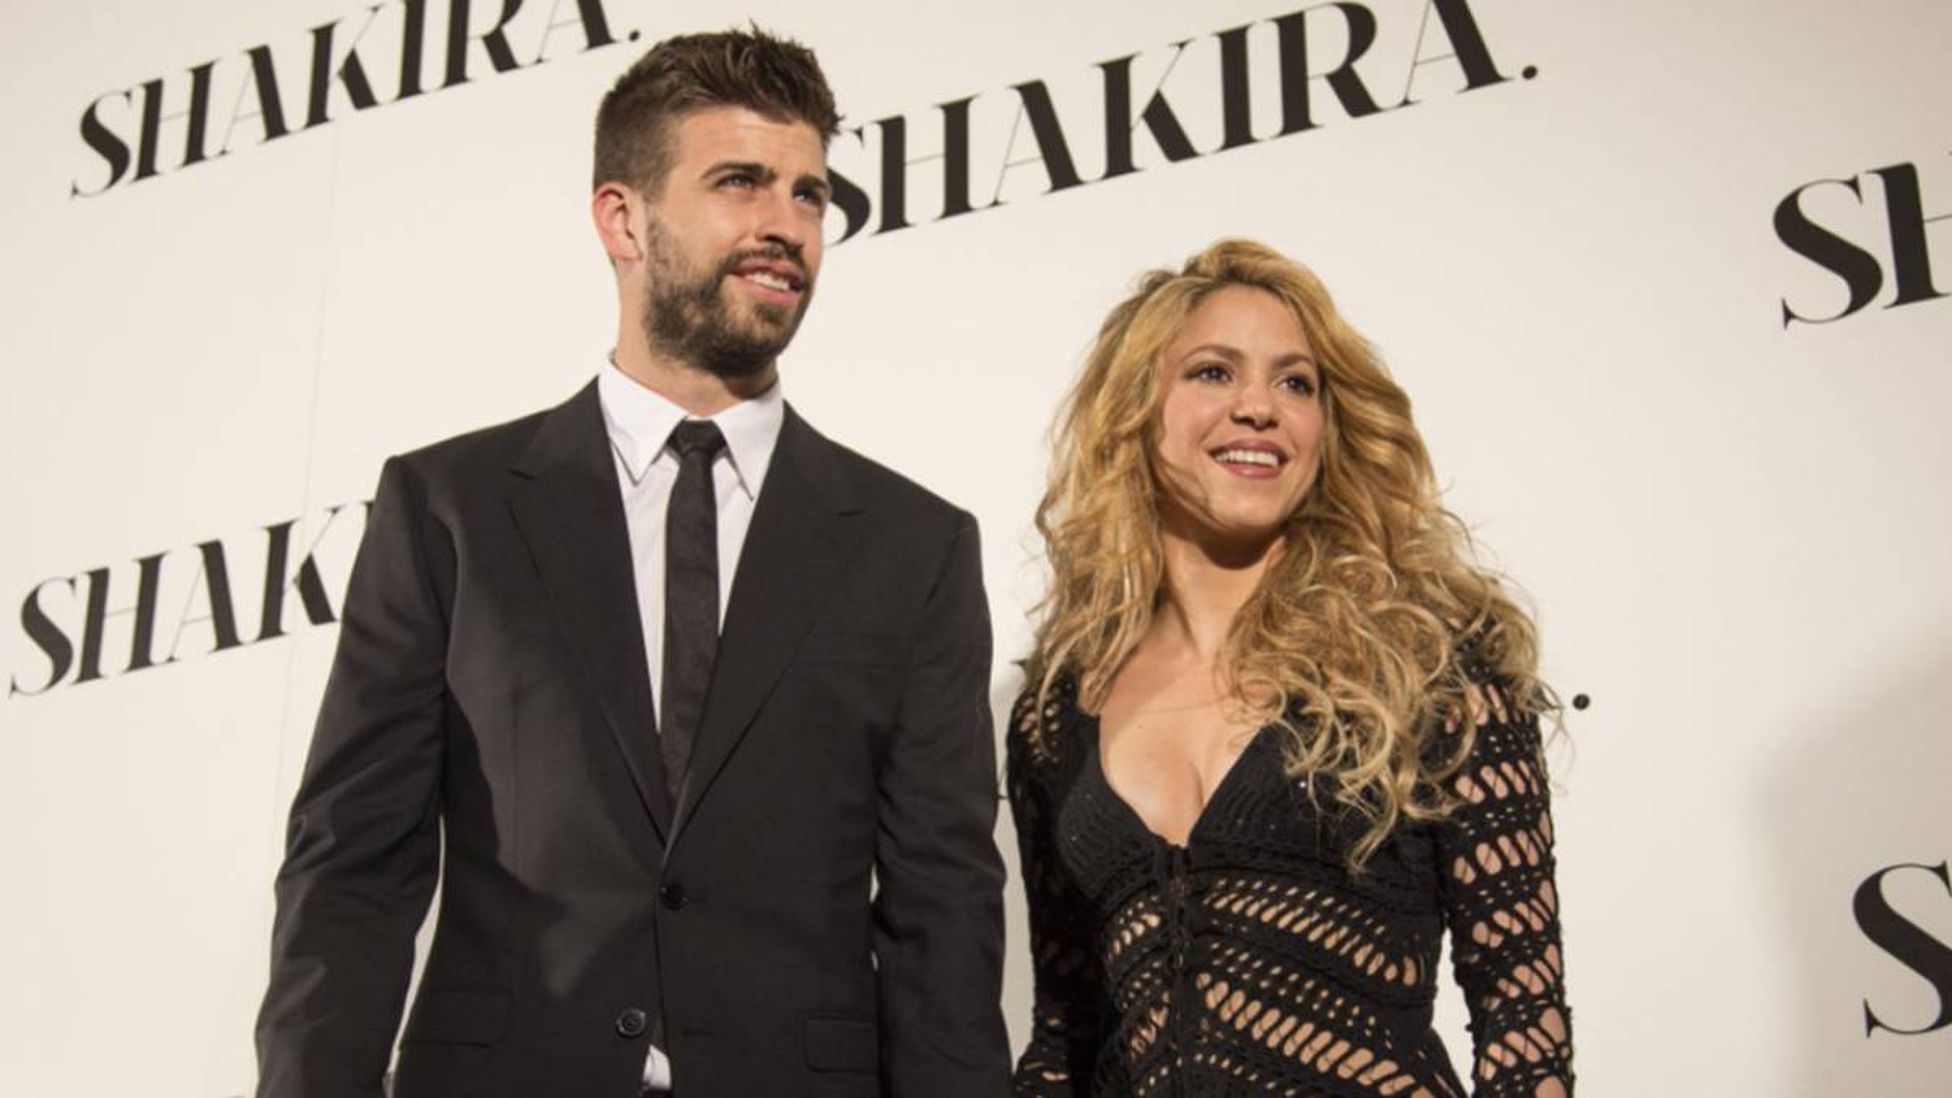 Te contamos todo sobre la polémica entre Shakira y Piqué